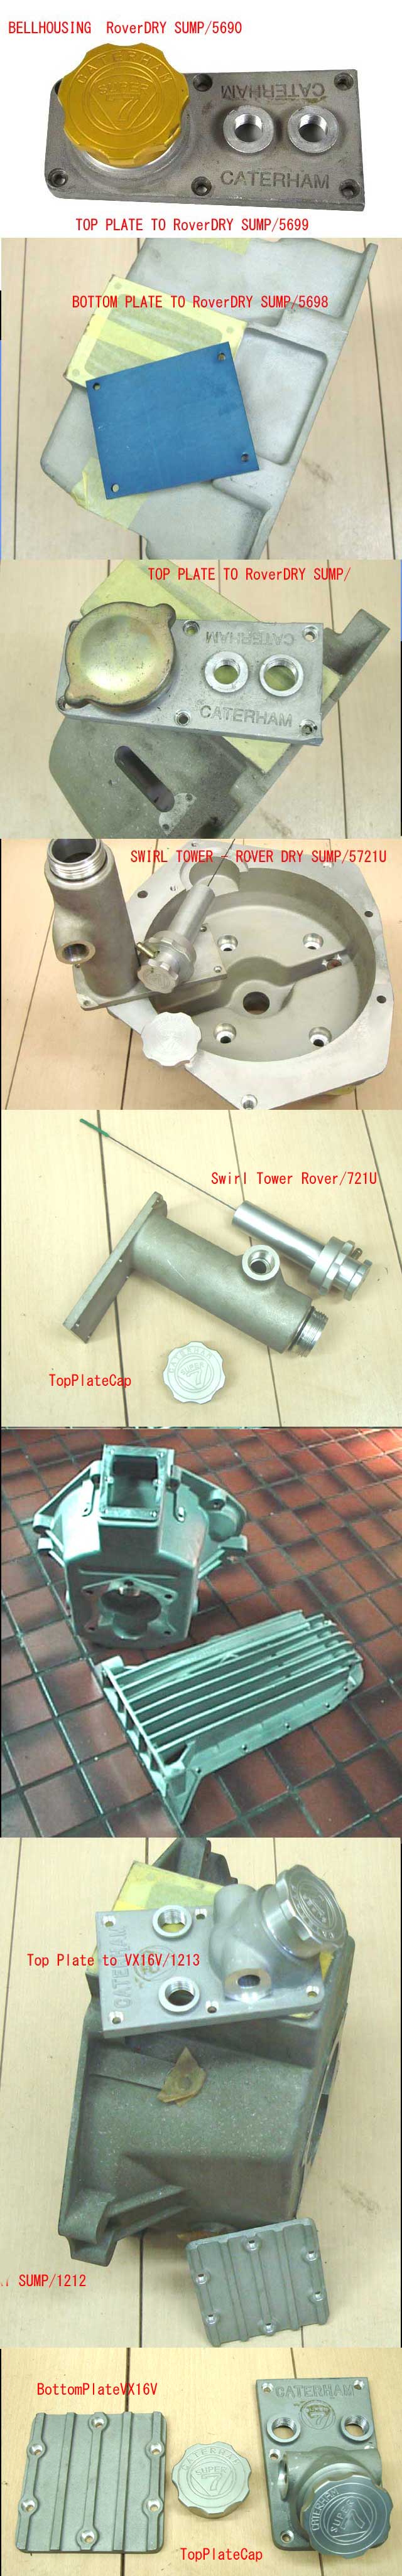 ベルハウジング RoverSigmaデュラテック画像